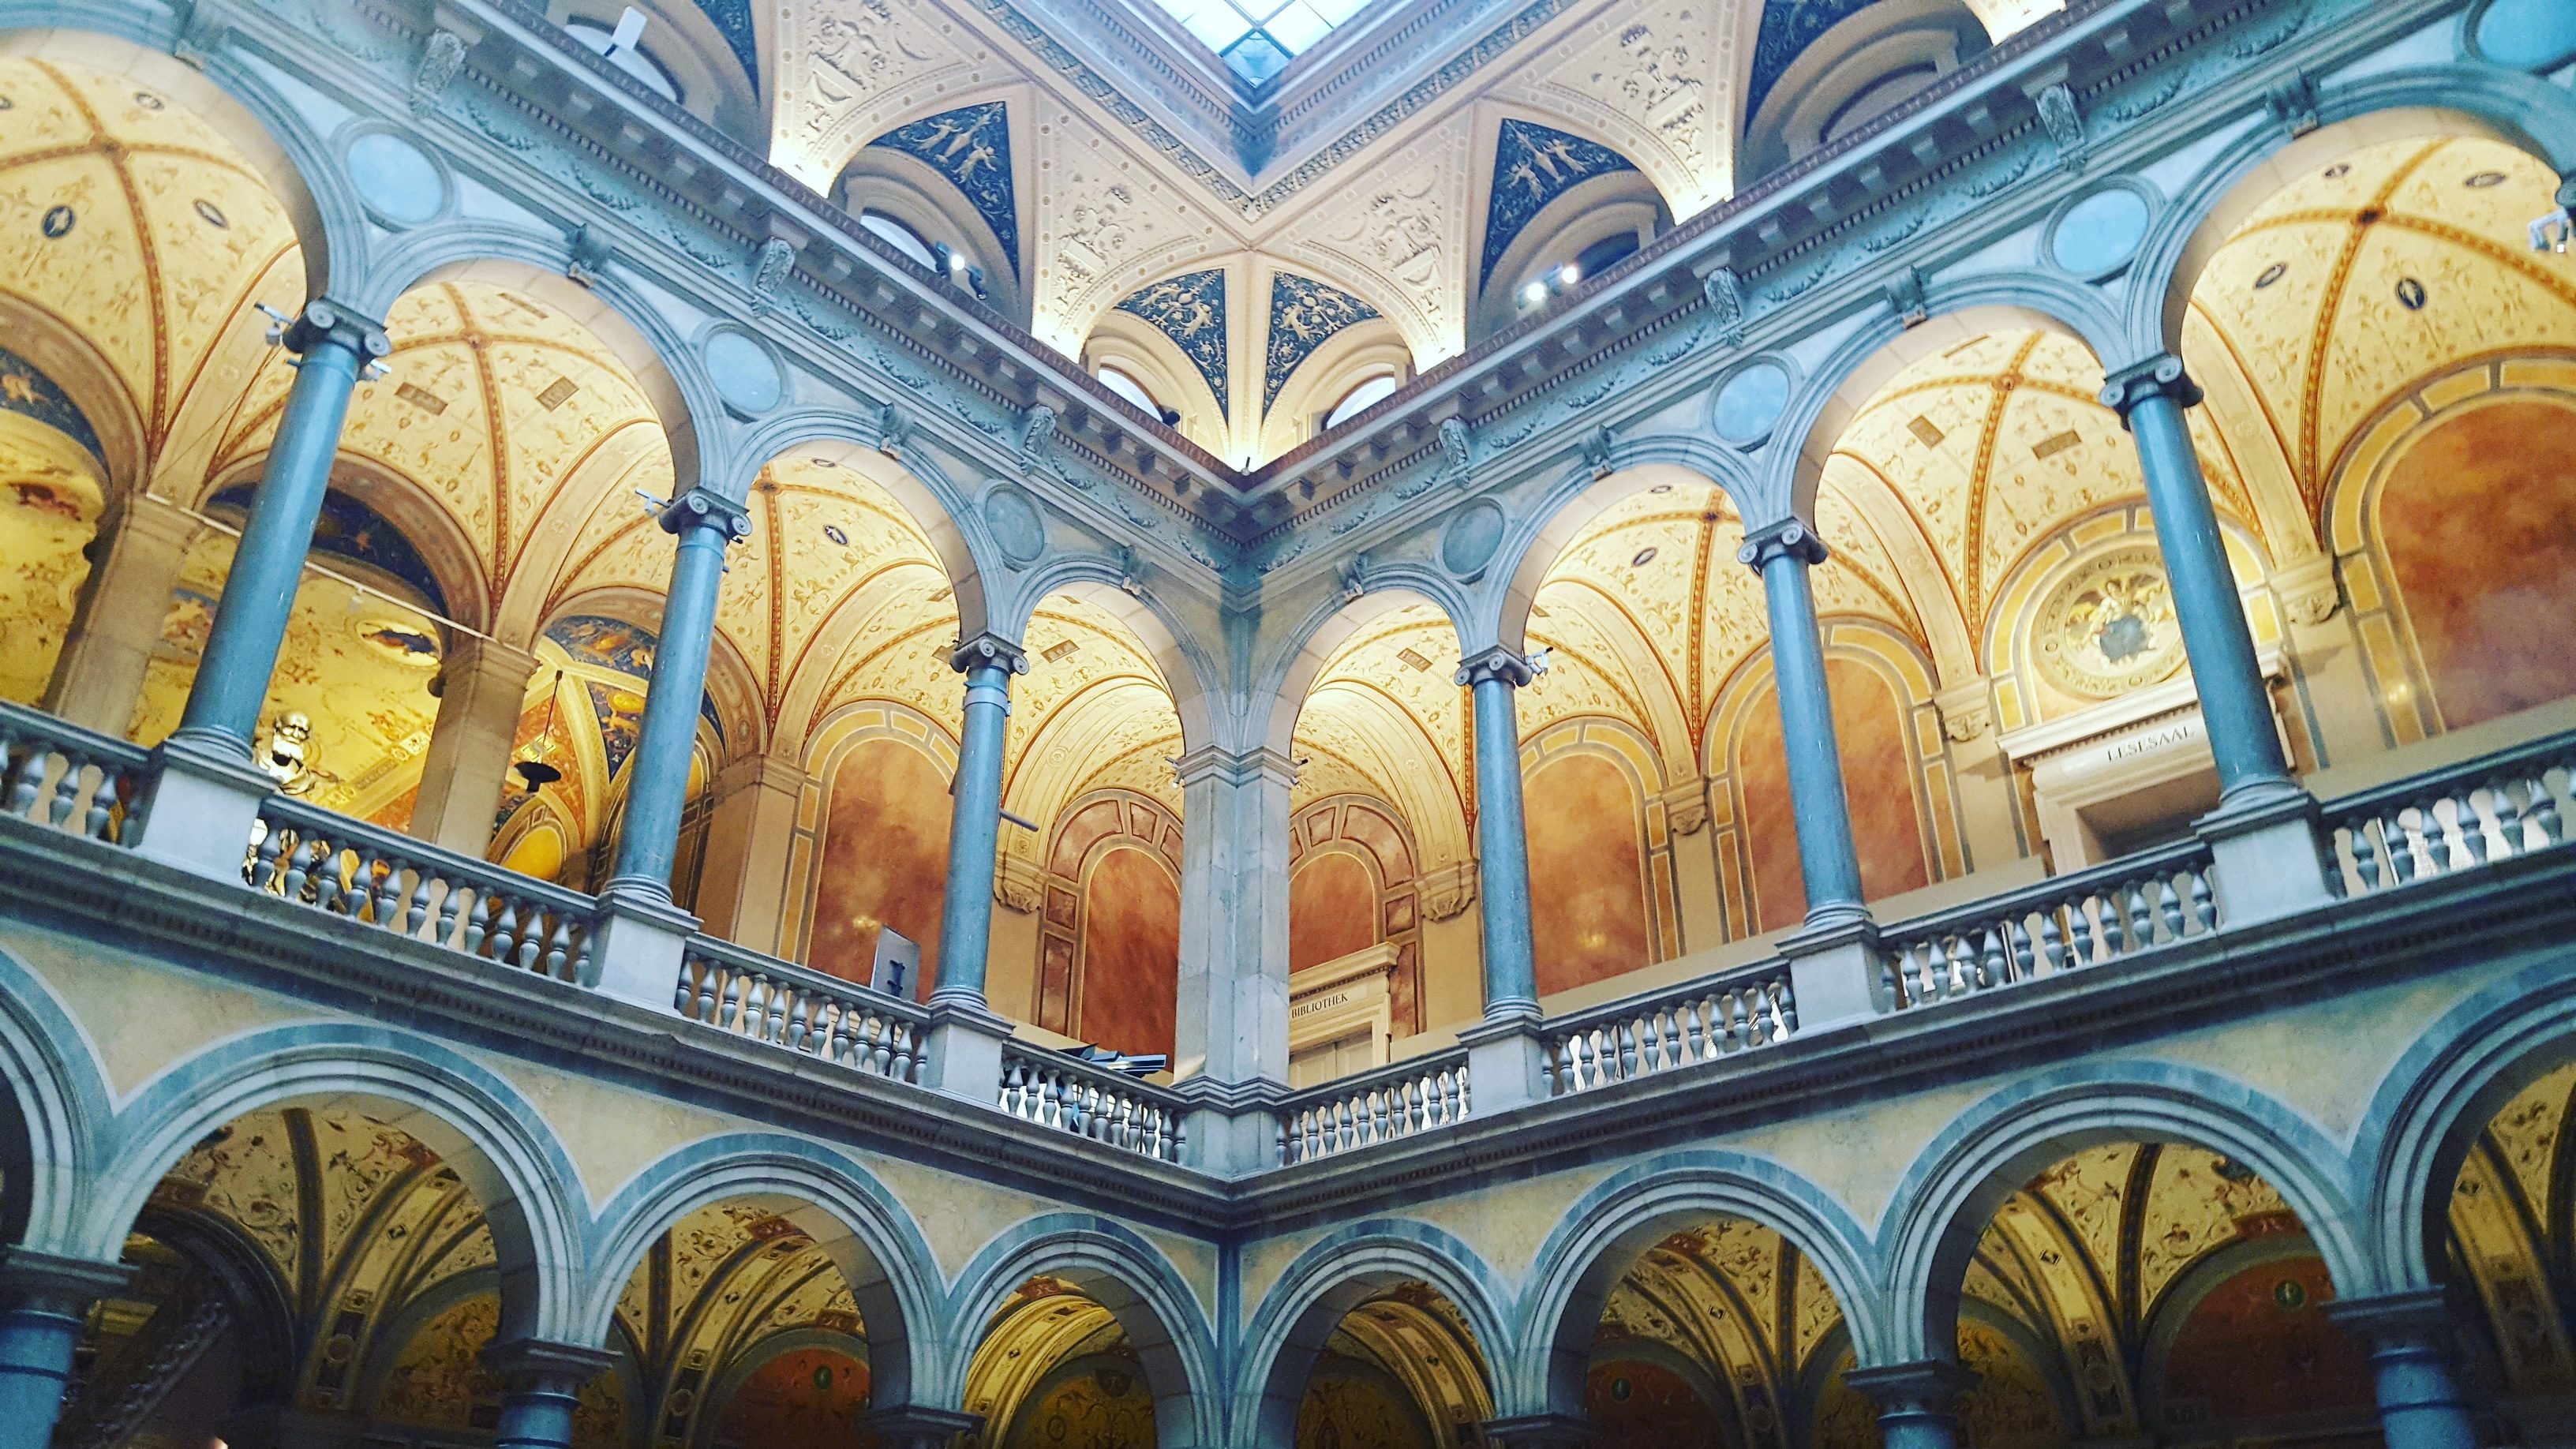 De Vienne 1900 au MAK à la Villa Klimt/aufildeslieux.fr/Hall aux colonnes du MAK©K.HIBBS